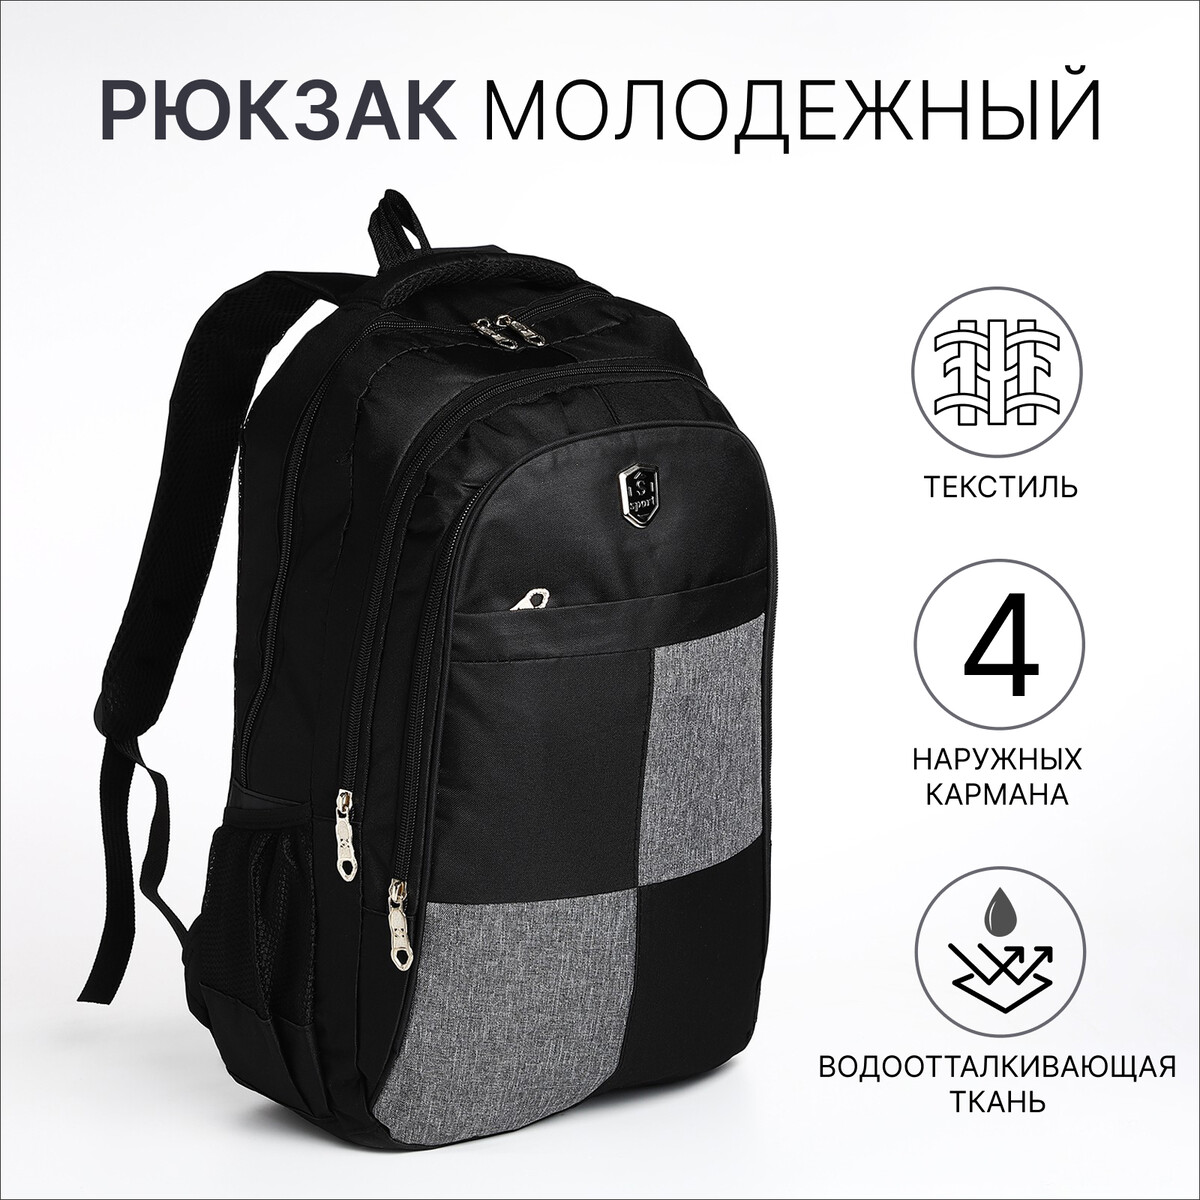 Рюкзак молодежный из текстиля, 2 отдела, 4 кармана, цвет черный